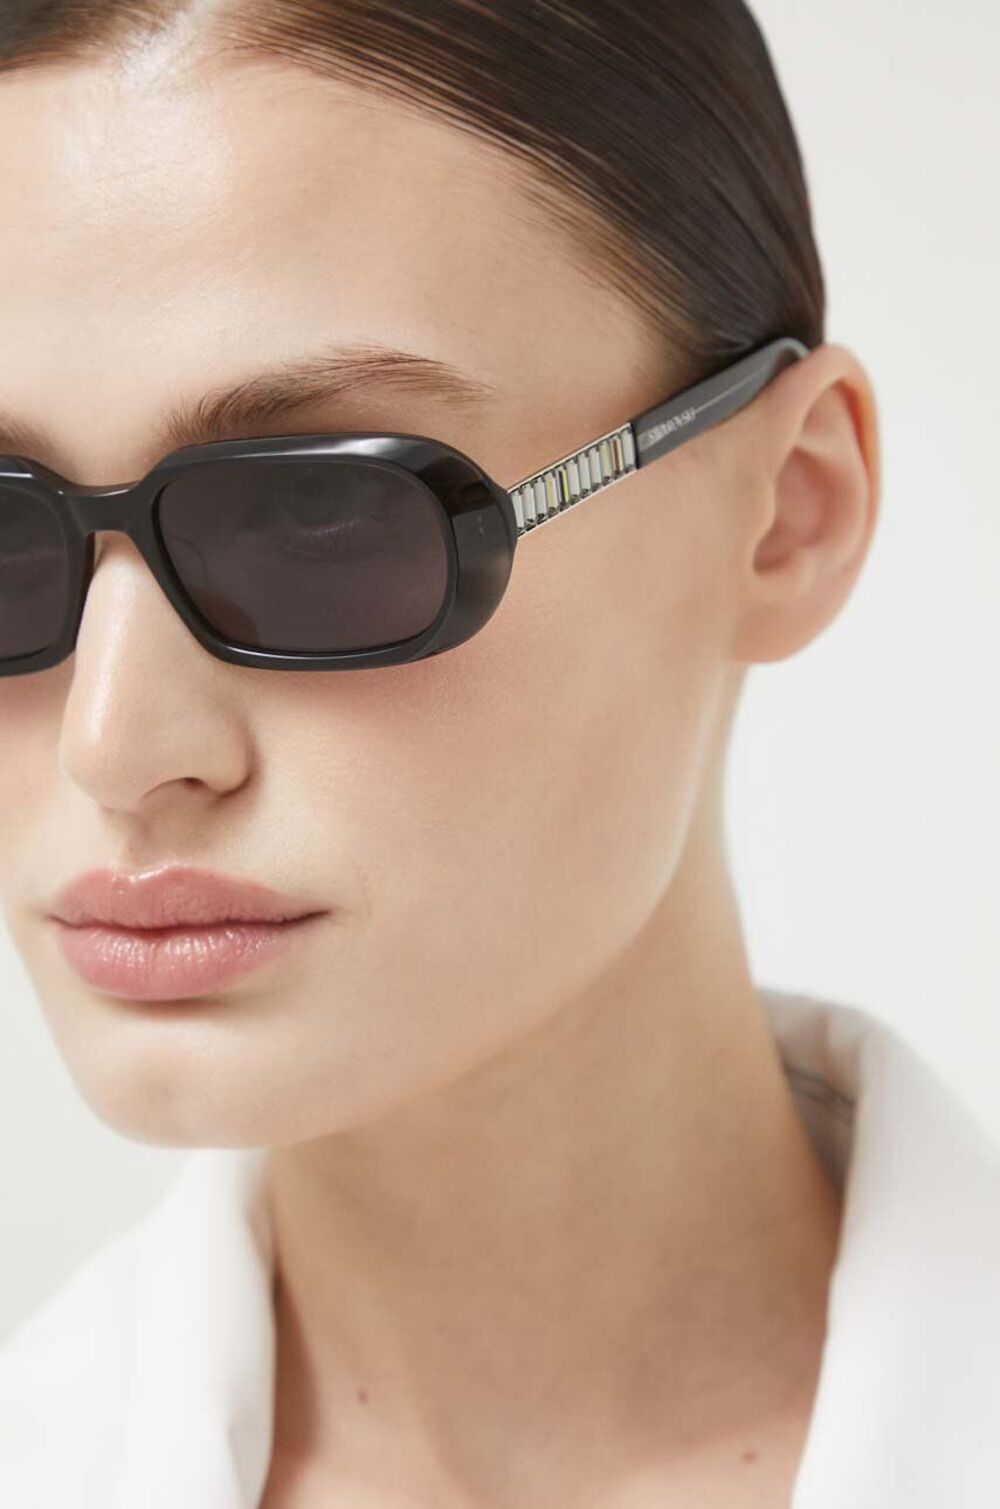 AA00 OKD0PU 99X F0 Elegancija i neodoljivi šarm: Predstavljamo novu kolekciju Swarovski naočara za sunce